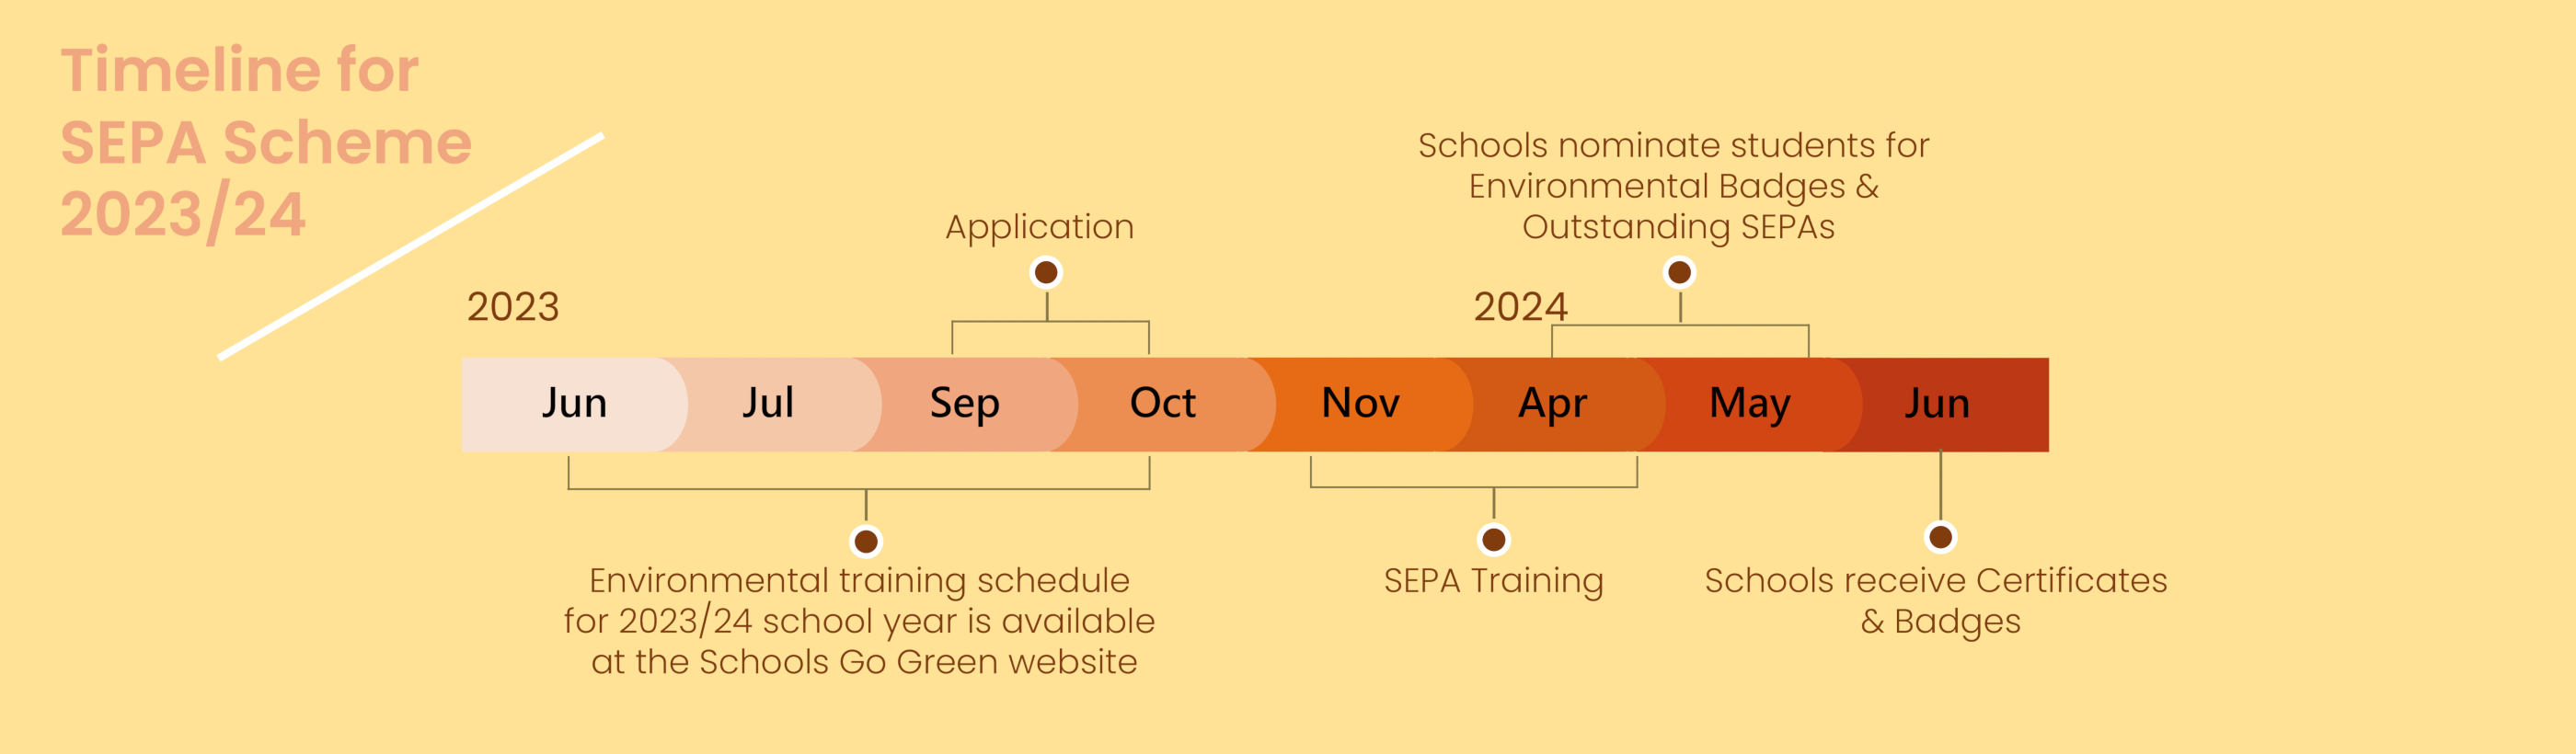 Timeline for SEPA Scheme